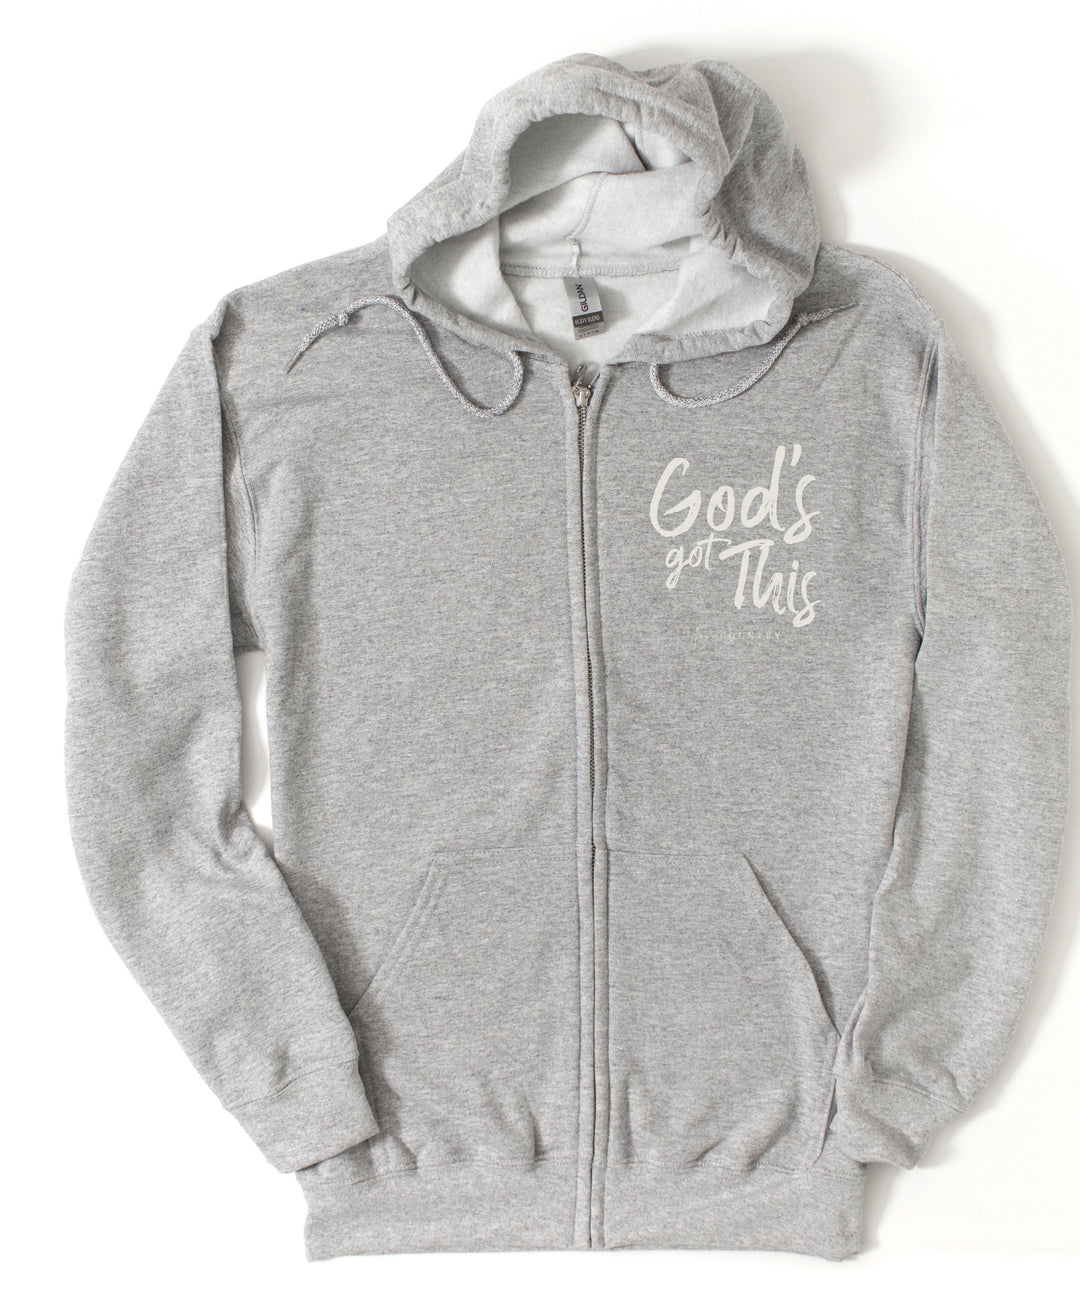 God's Got This - Unisex Zip-Up Hoodie Sweatshirt